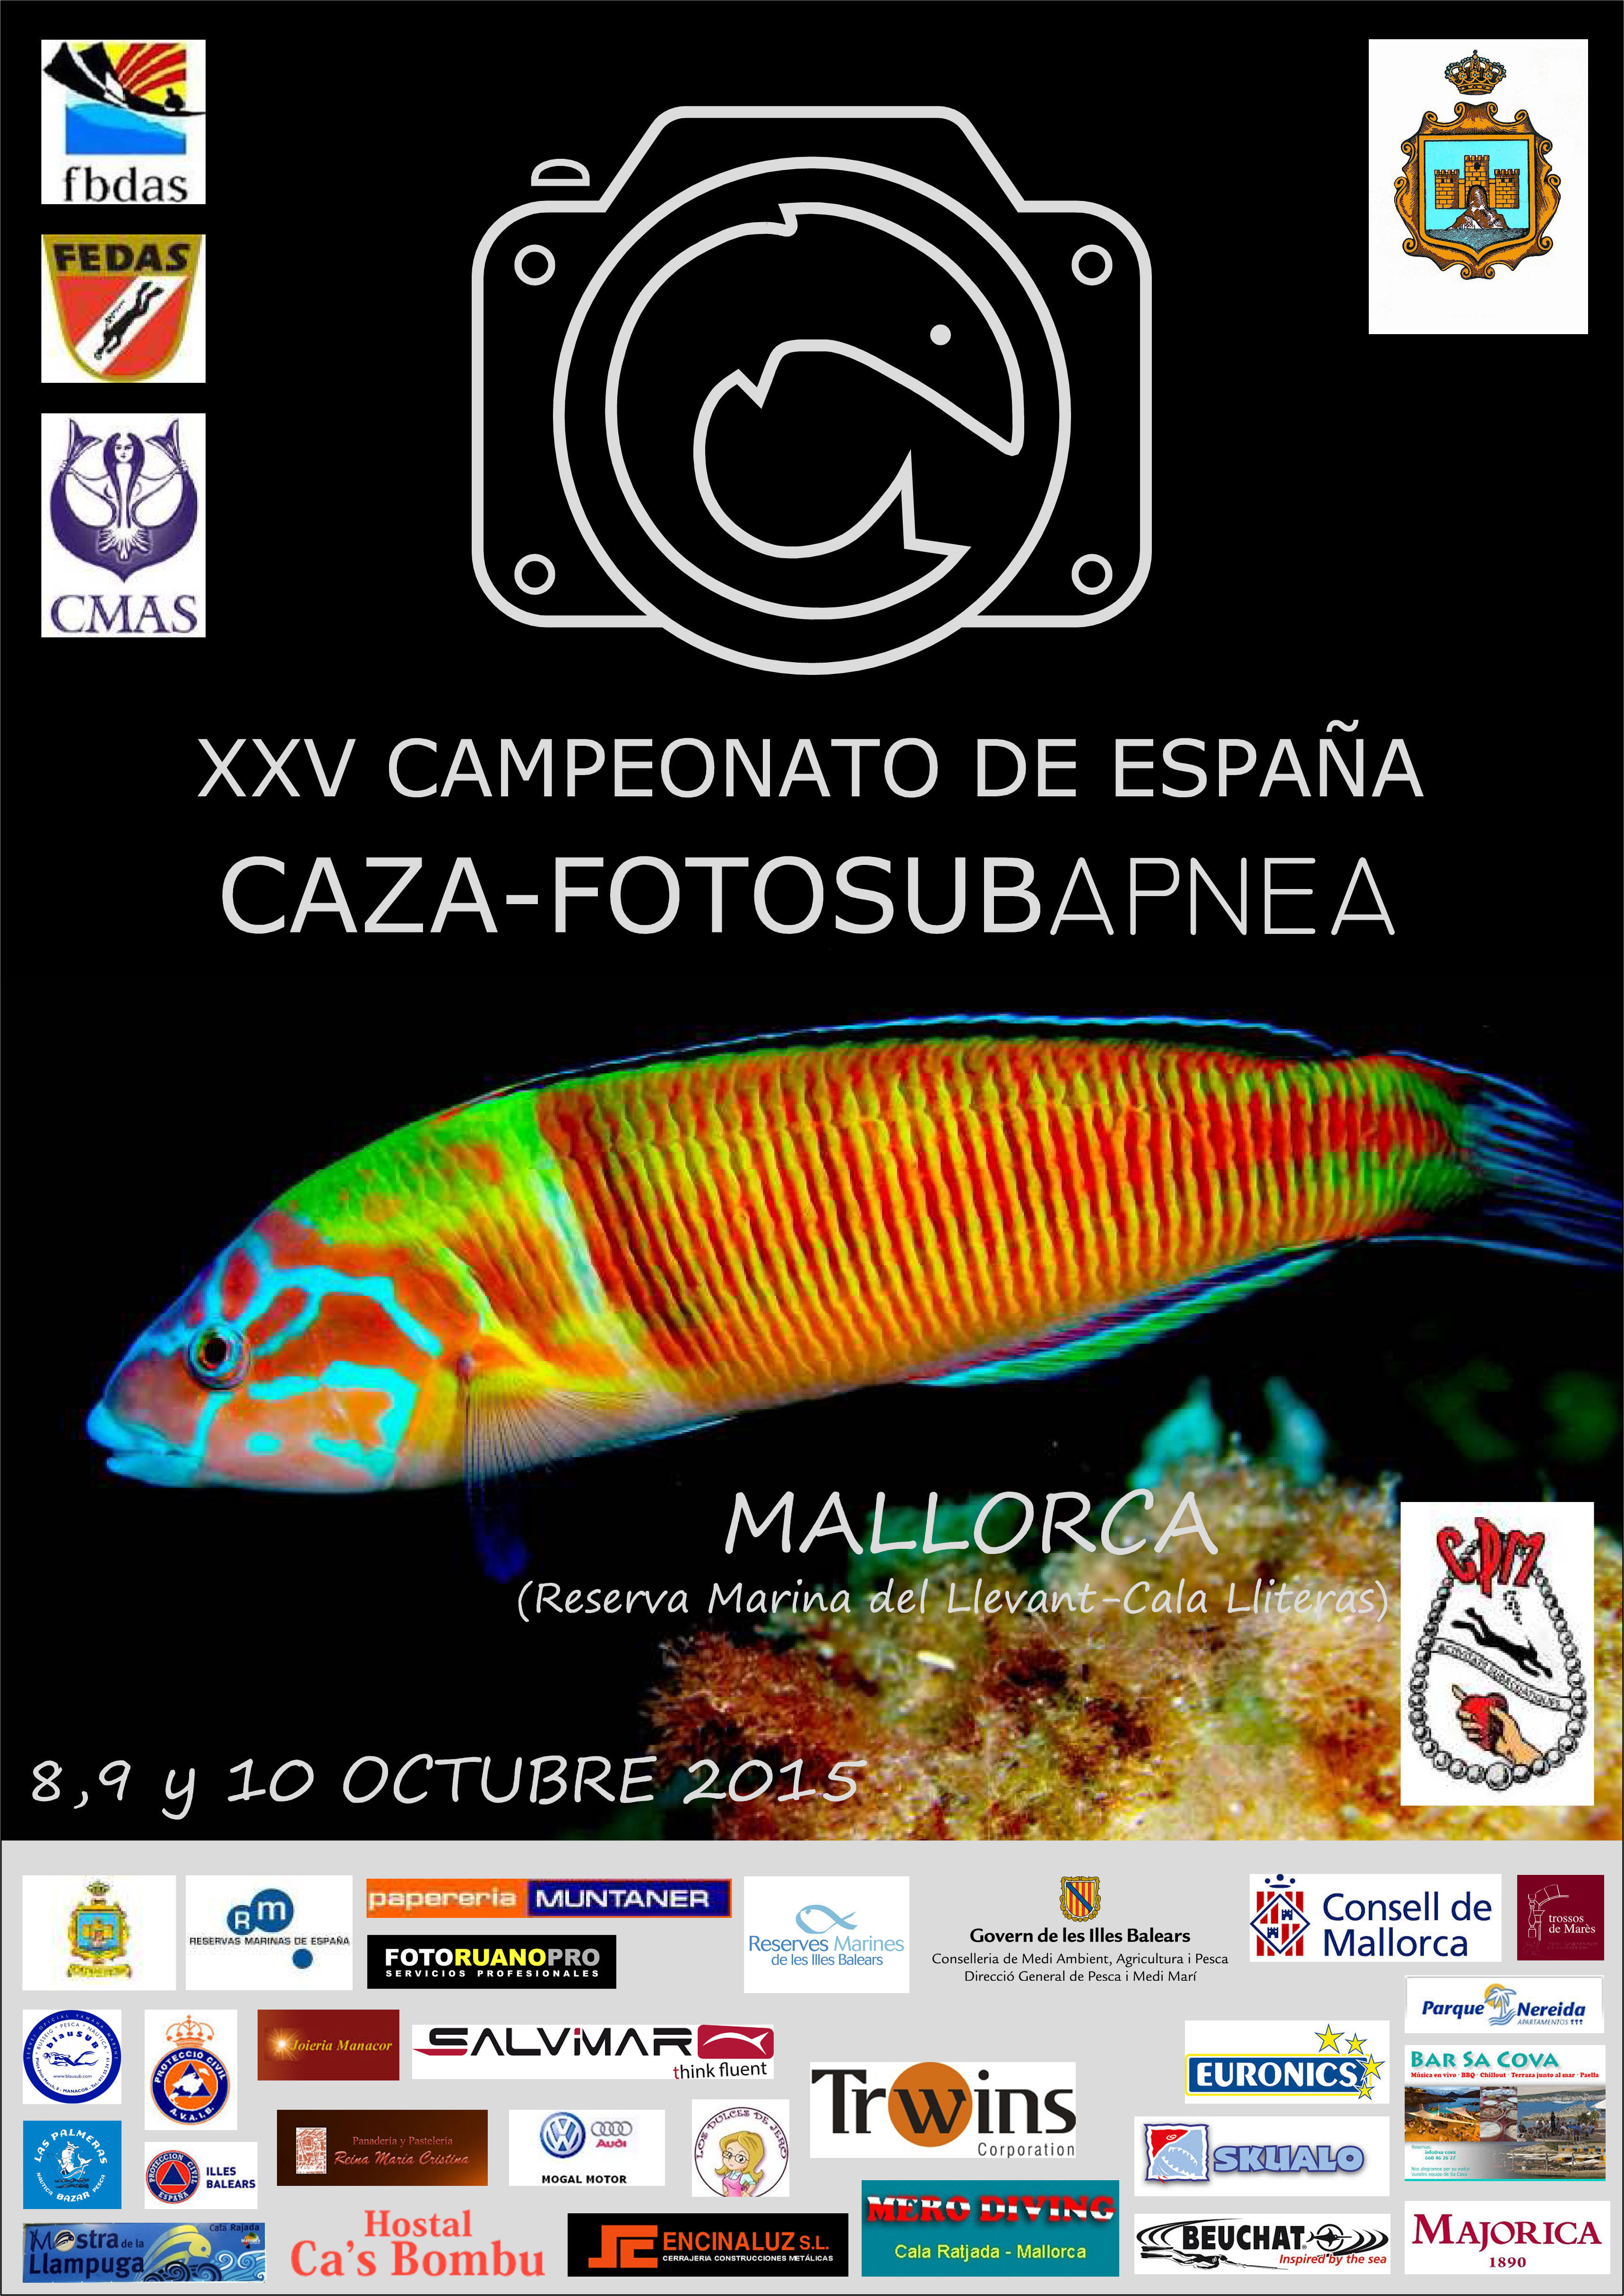 Caza-fotosubapnea: XXV campeonato de España